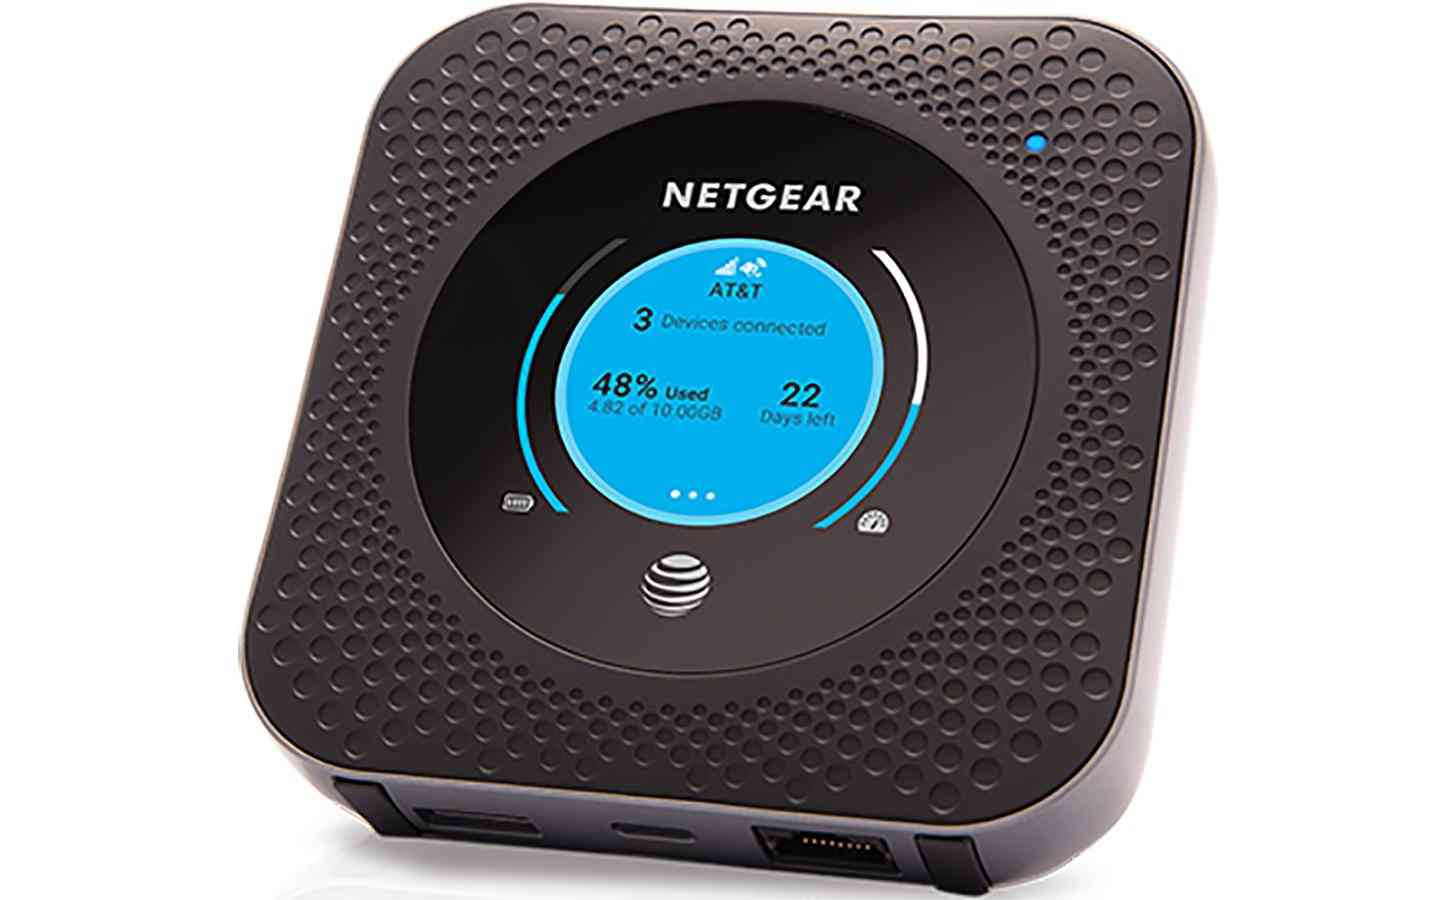 AT&T Netgear Nighthawk Mobile Hotspot Router 5G Evolution official